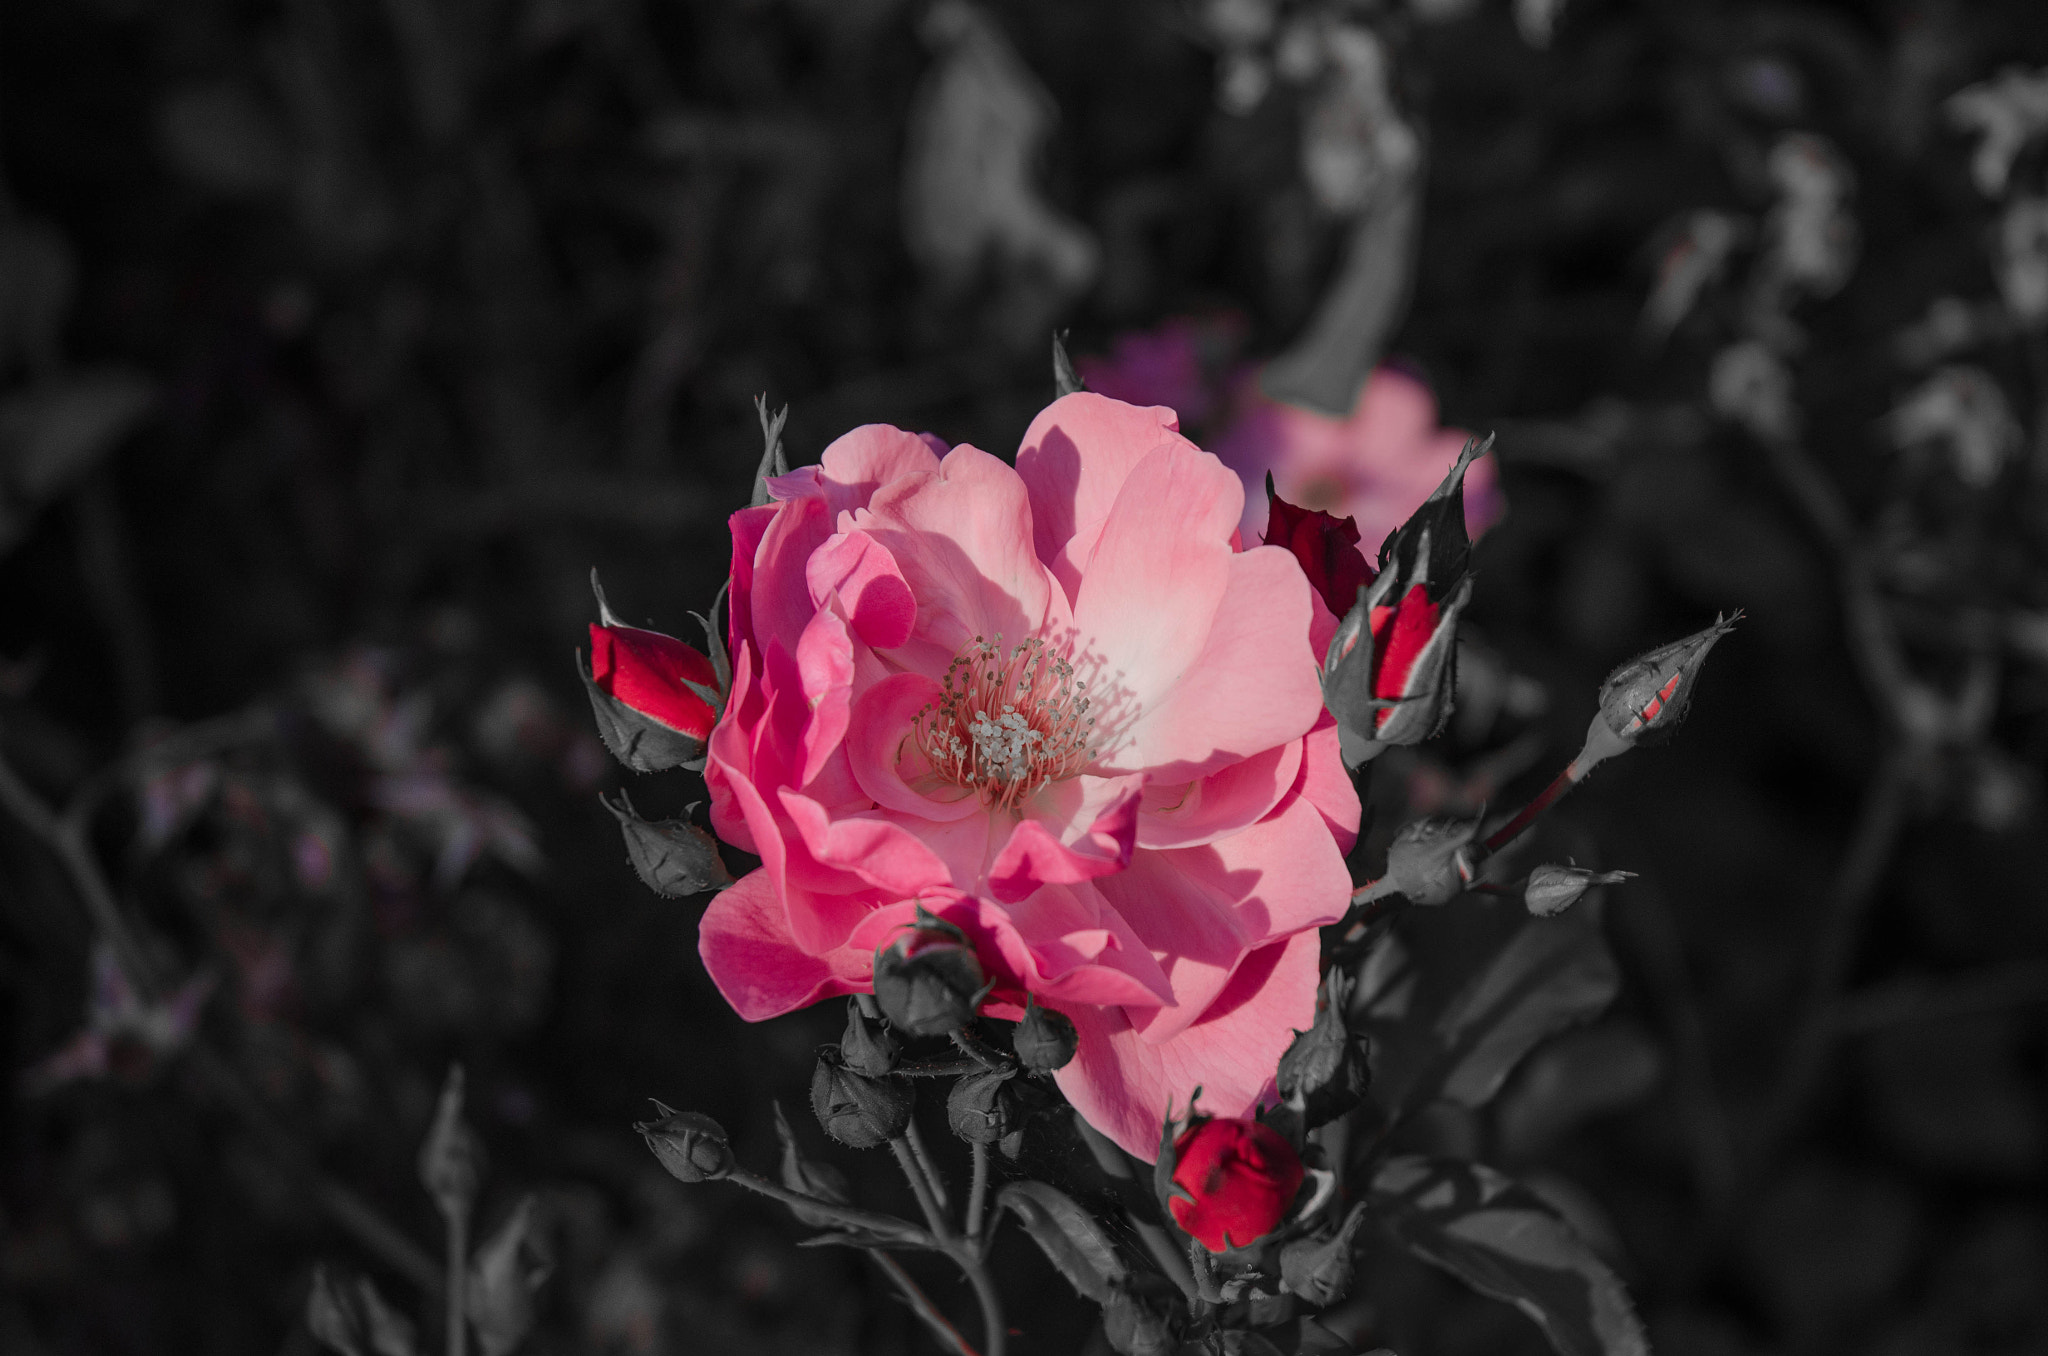 Nikon D5100 sample photo. Beautiful rose photography